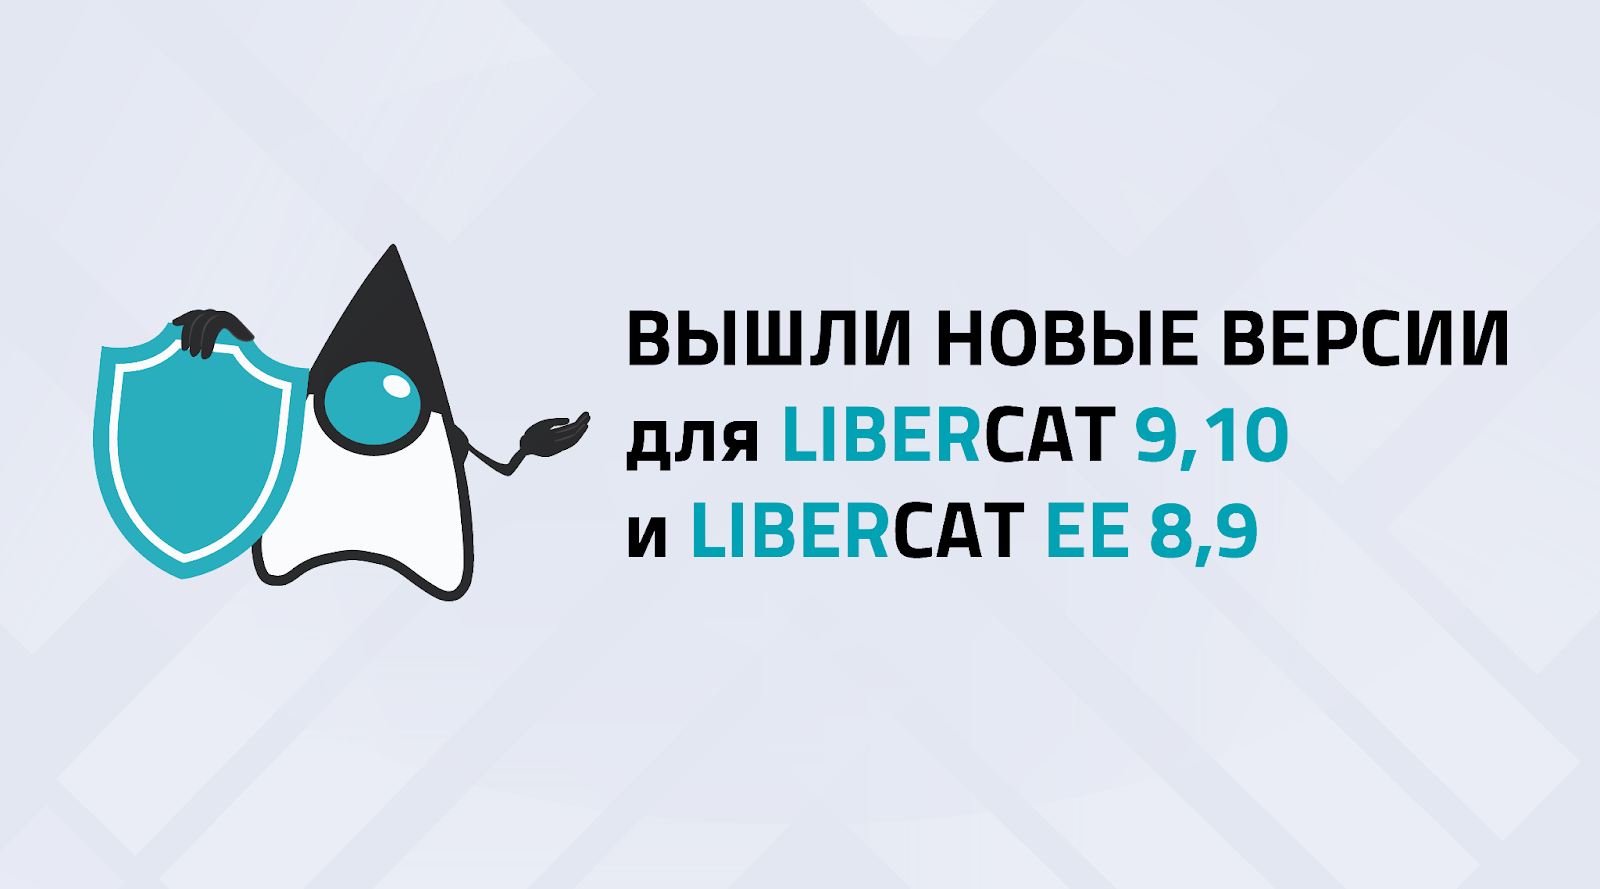 Вышли новые версии для Libercat 9, 10 и Libercat EE 8, 9 с обновлениями безопасности